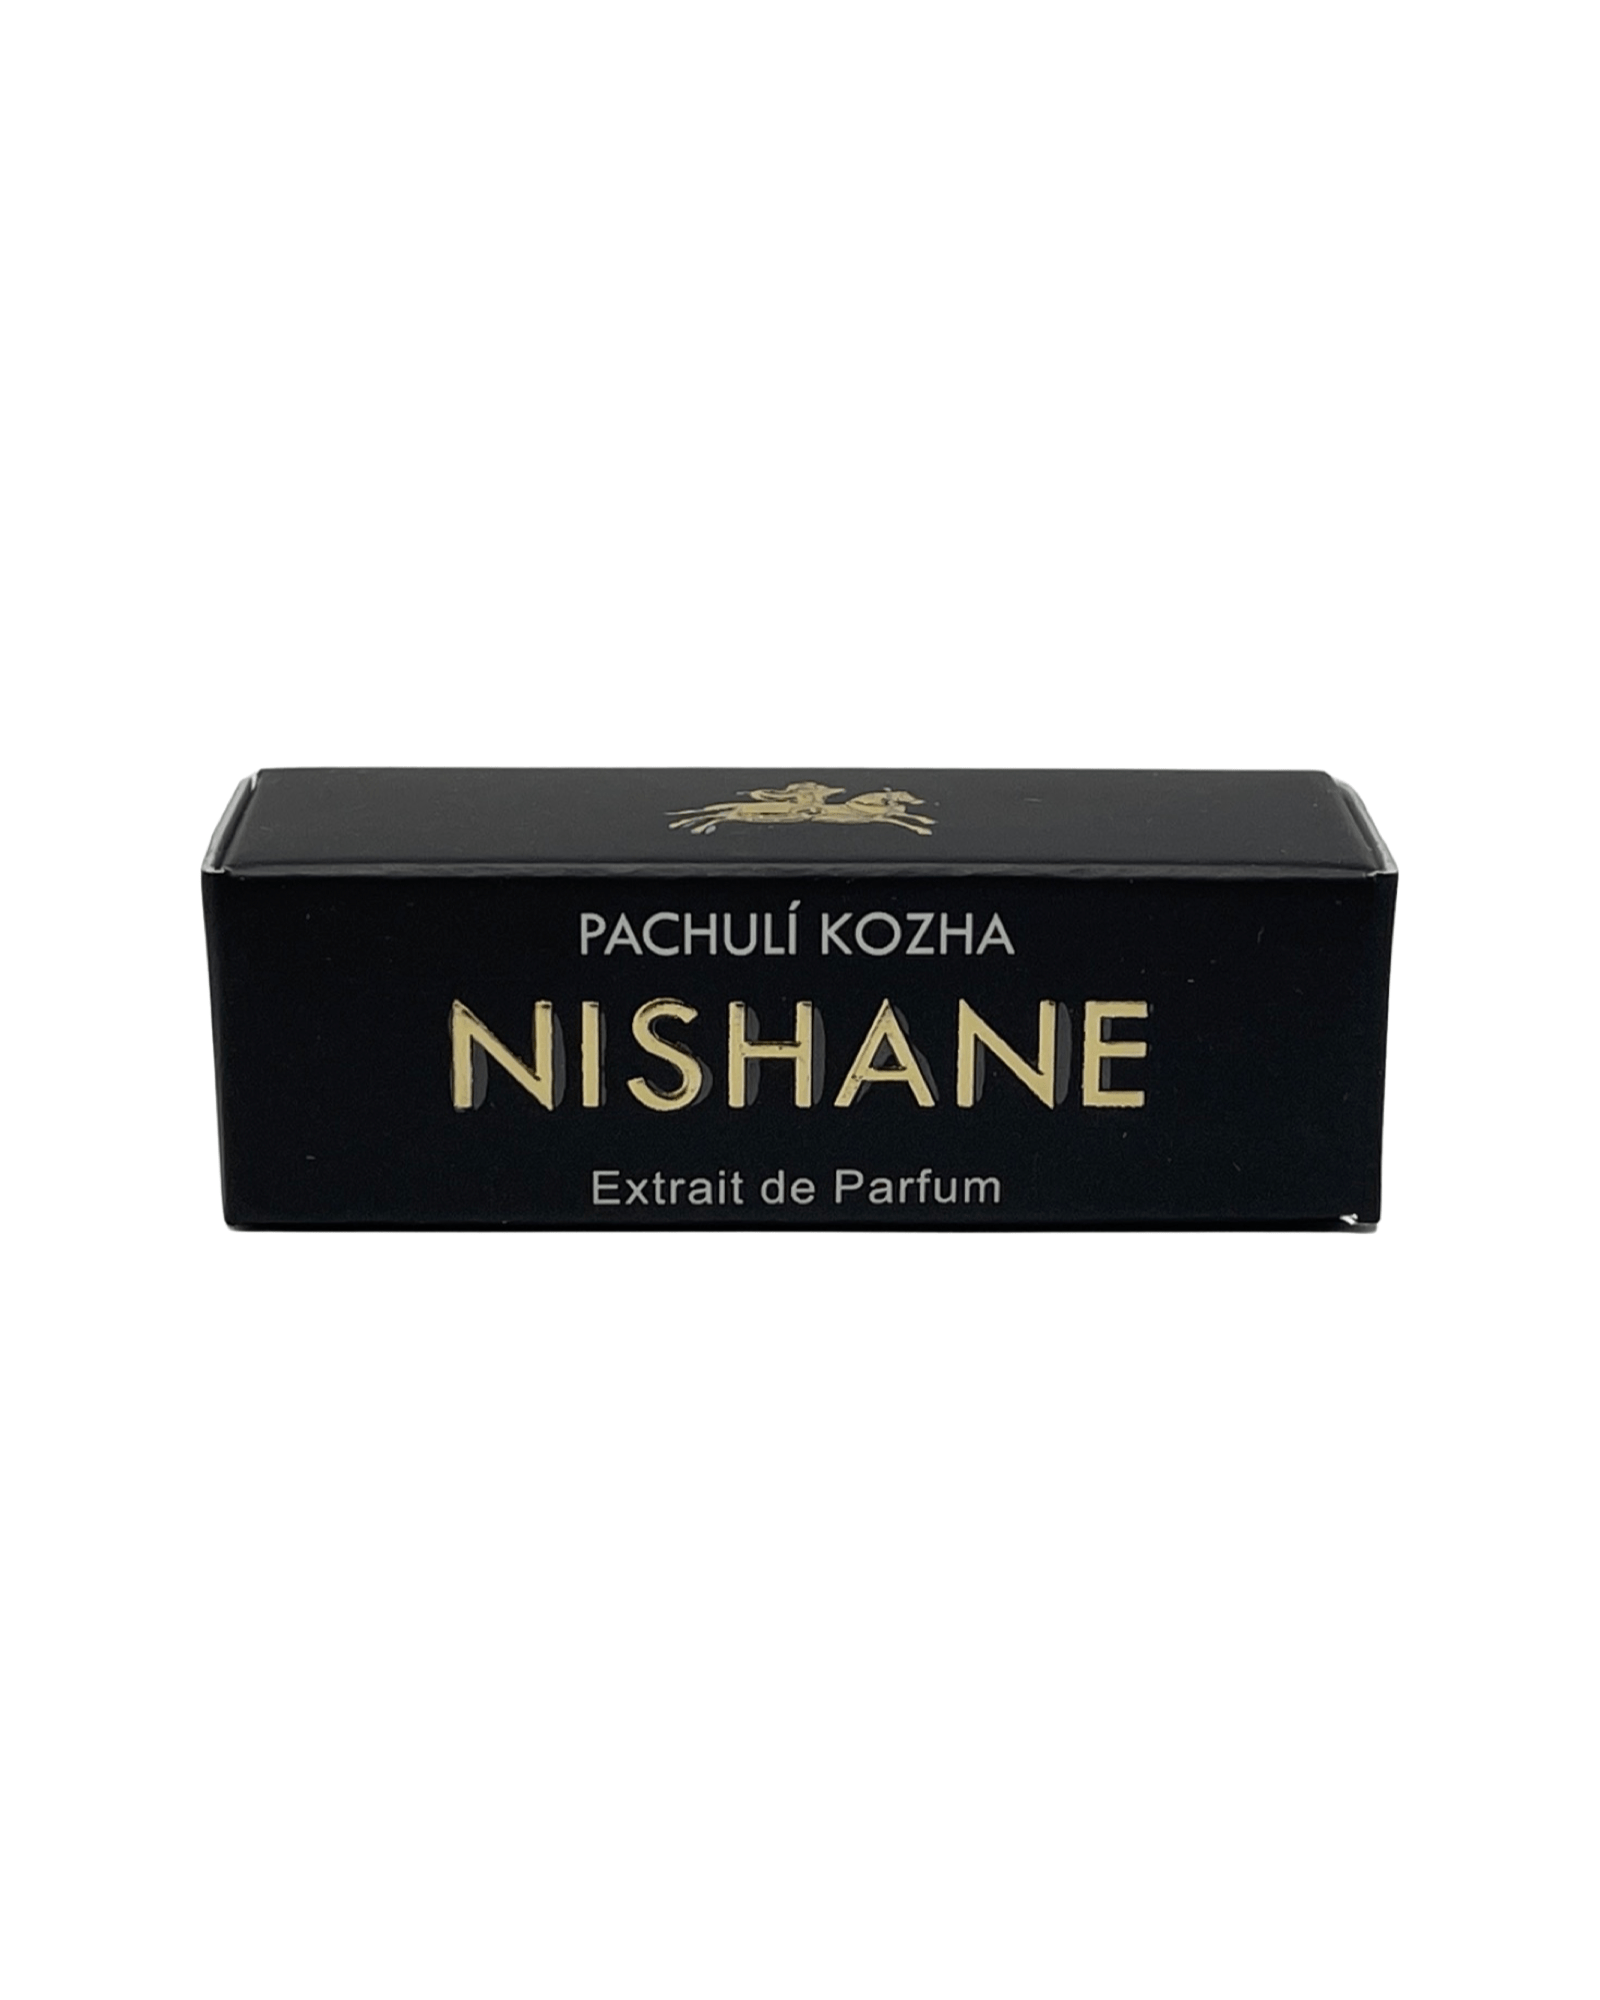 Nishane - Pachuli Kozha - 1.5ml.